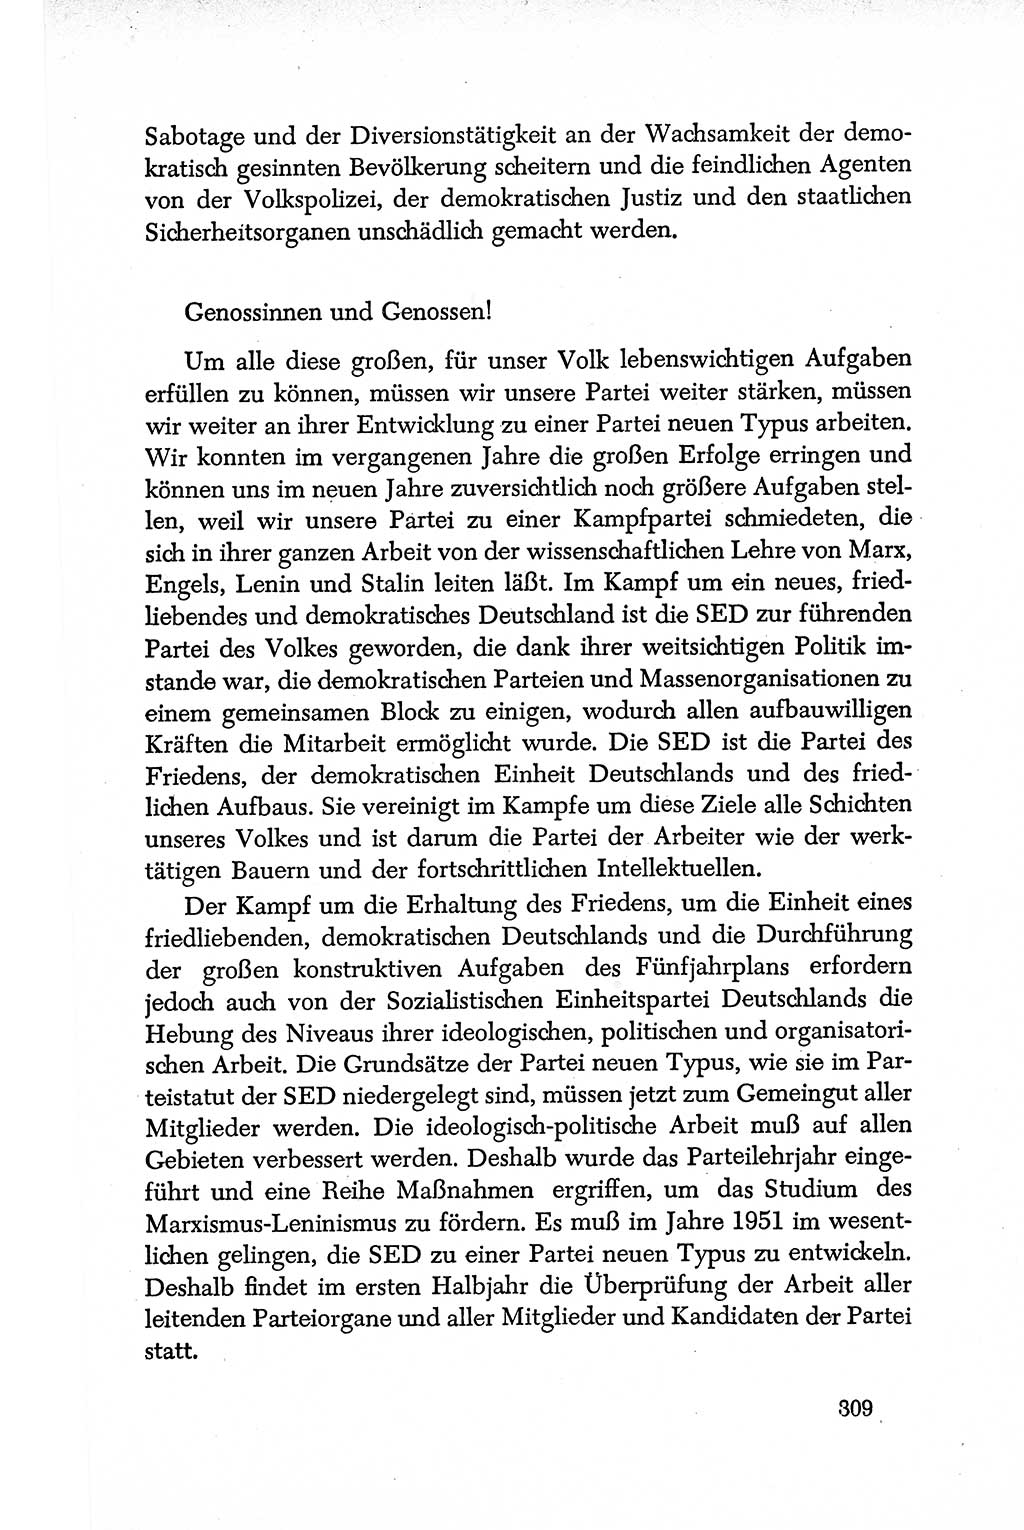 Dokumente der Sozialistischen Einheitspartei Deutschlands (SED) [Deutsche Demokratische Republik (DDR)] 1950-1952, Seite 309 (Dok. SED DDR 1950-1952, S. 309)